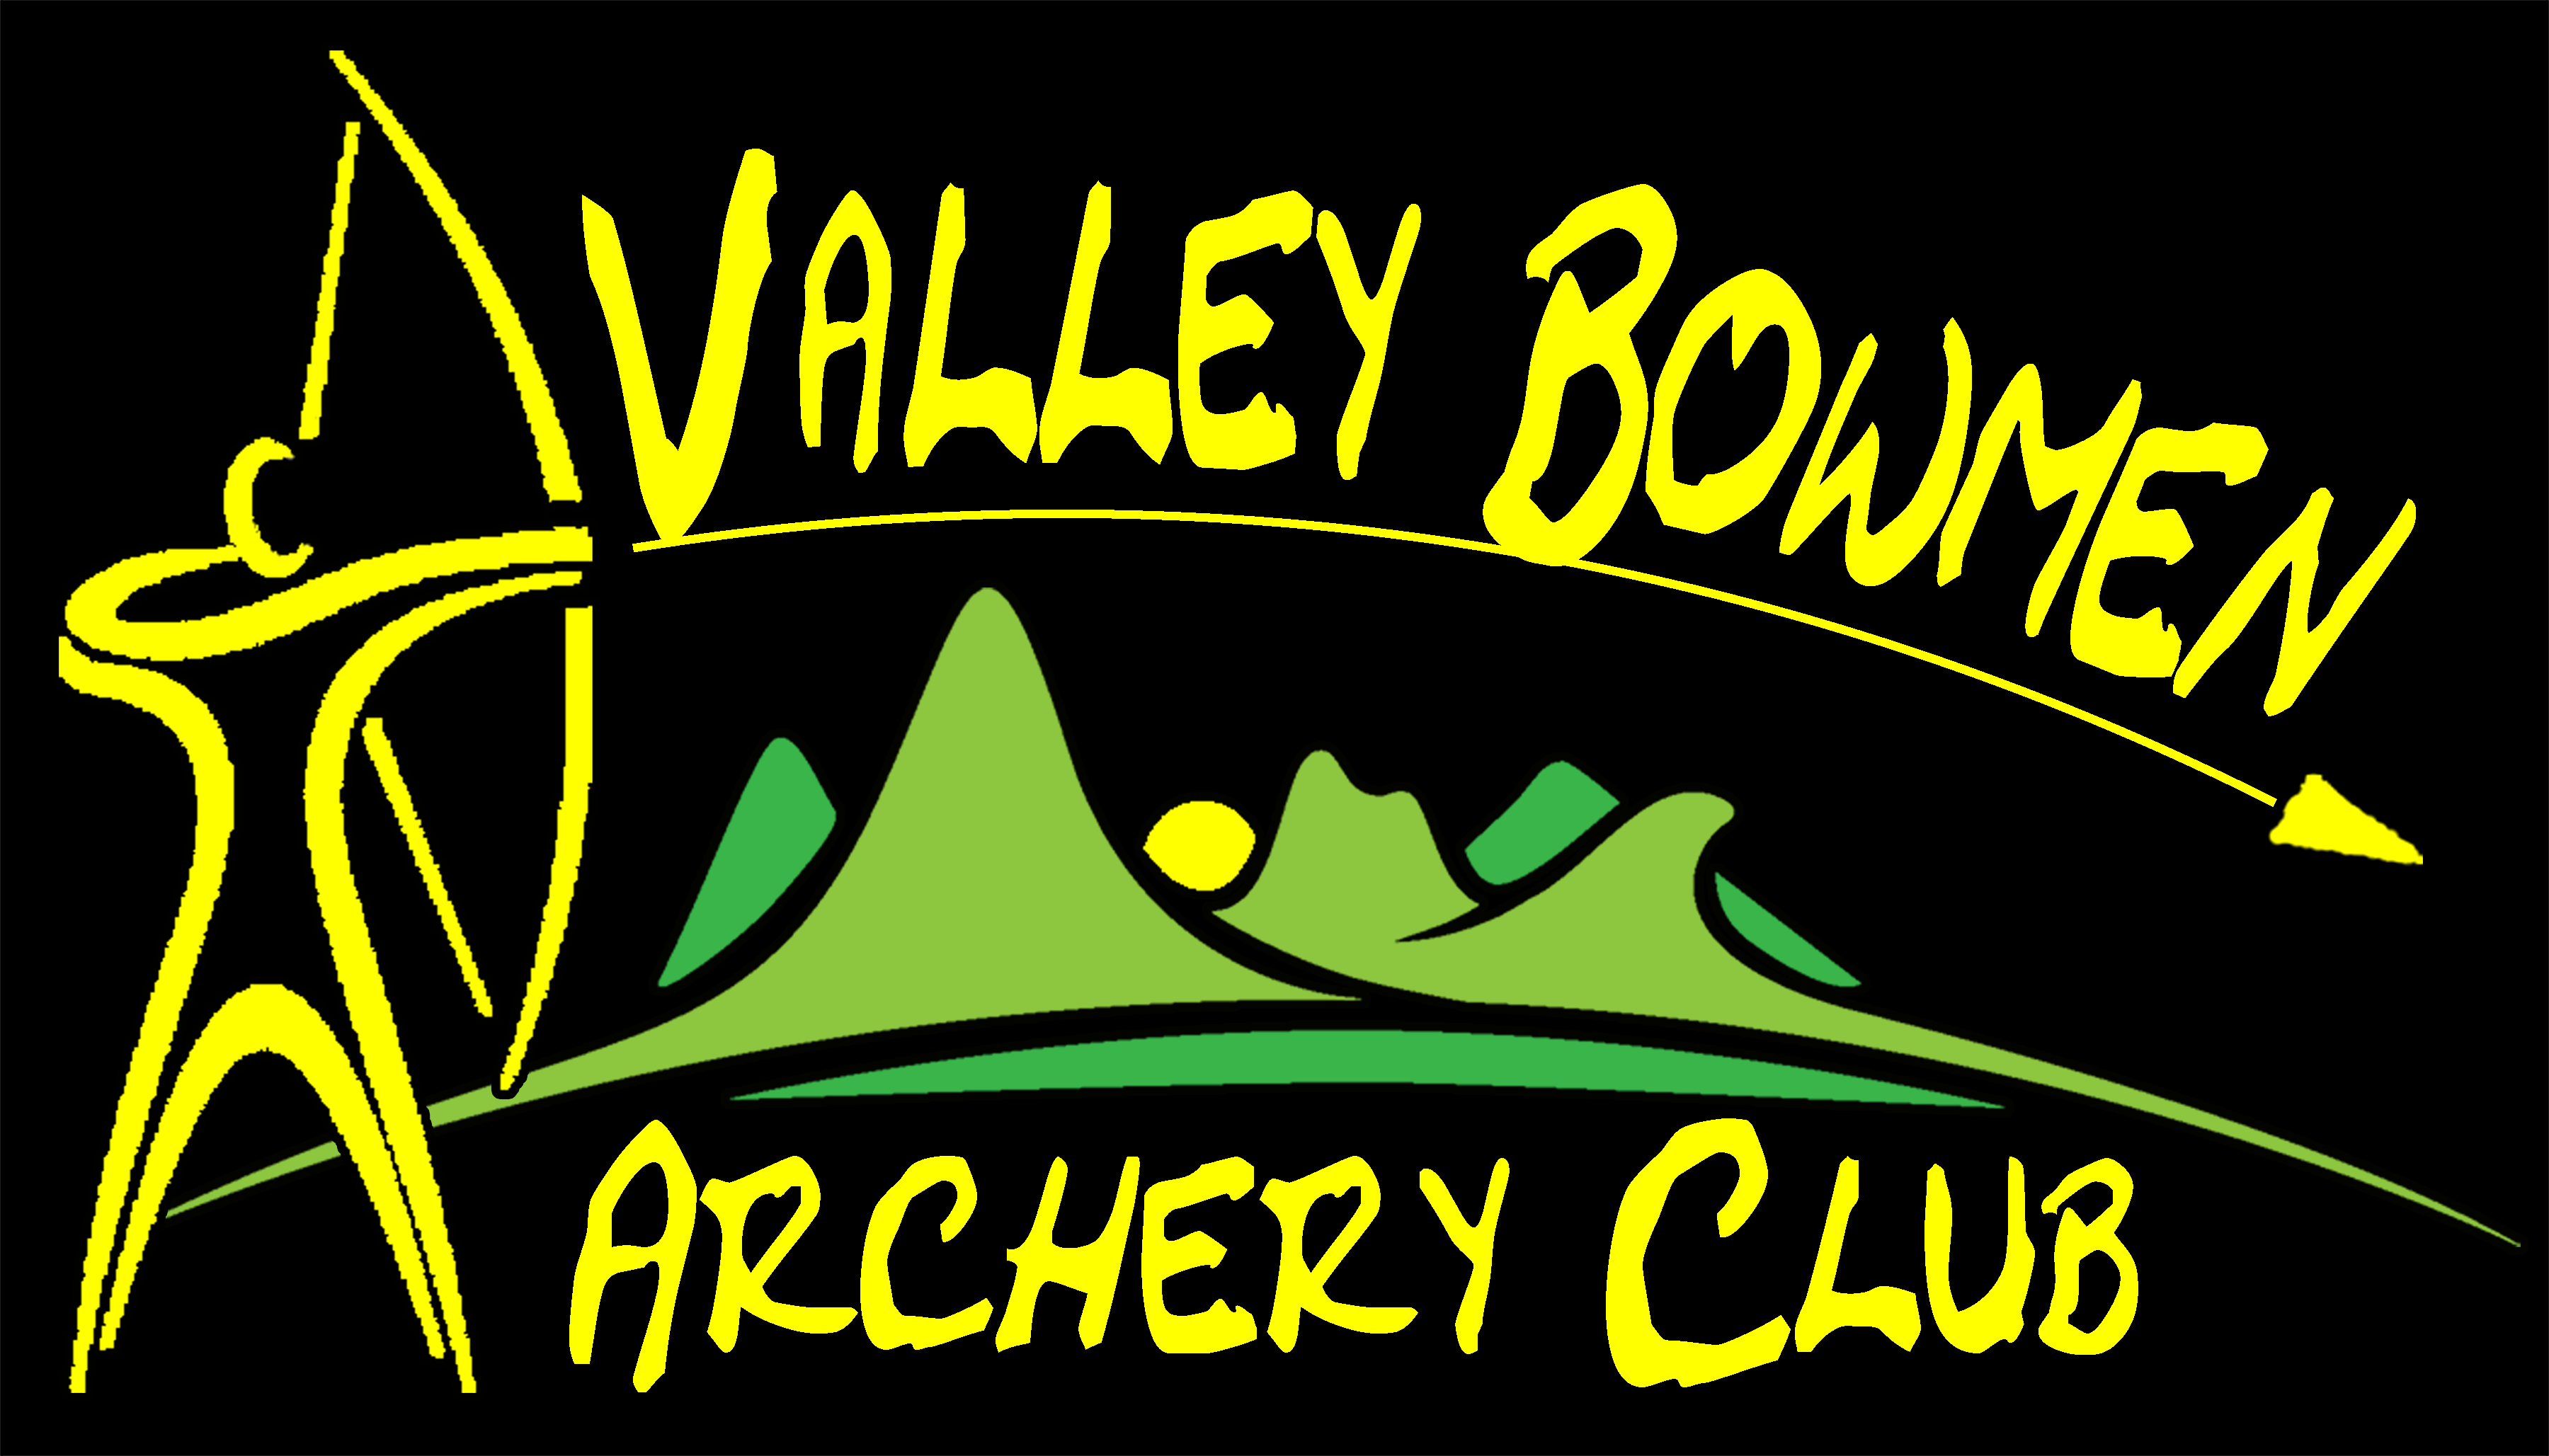 Valley Bowmen Archery Club